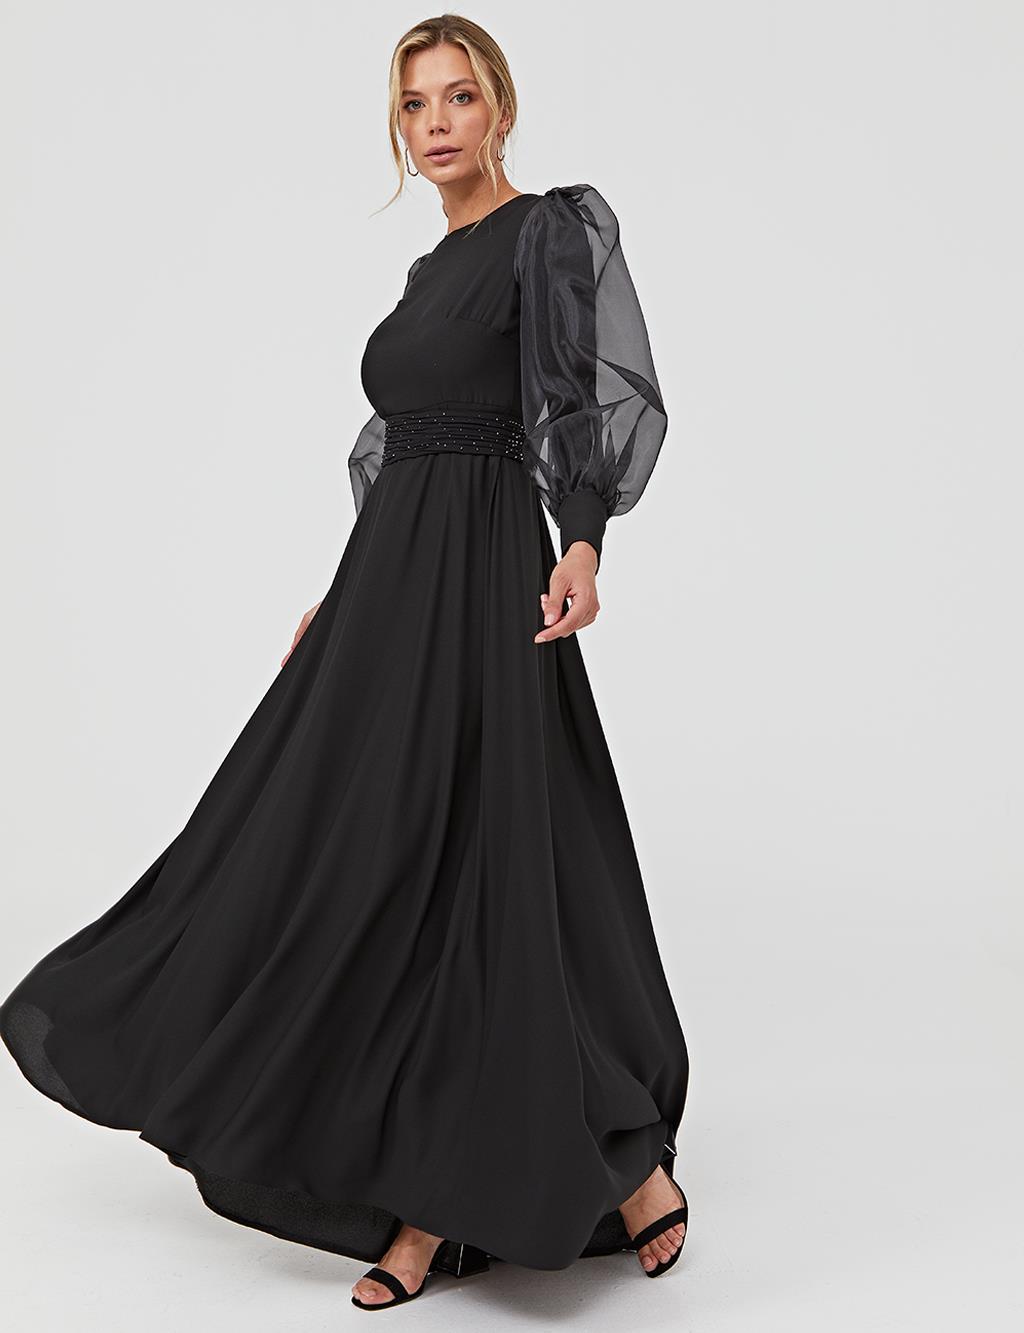 Sleeve Chiffon Layered Maxi Dress A21 23034 Black